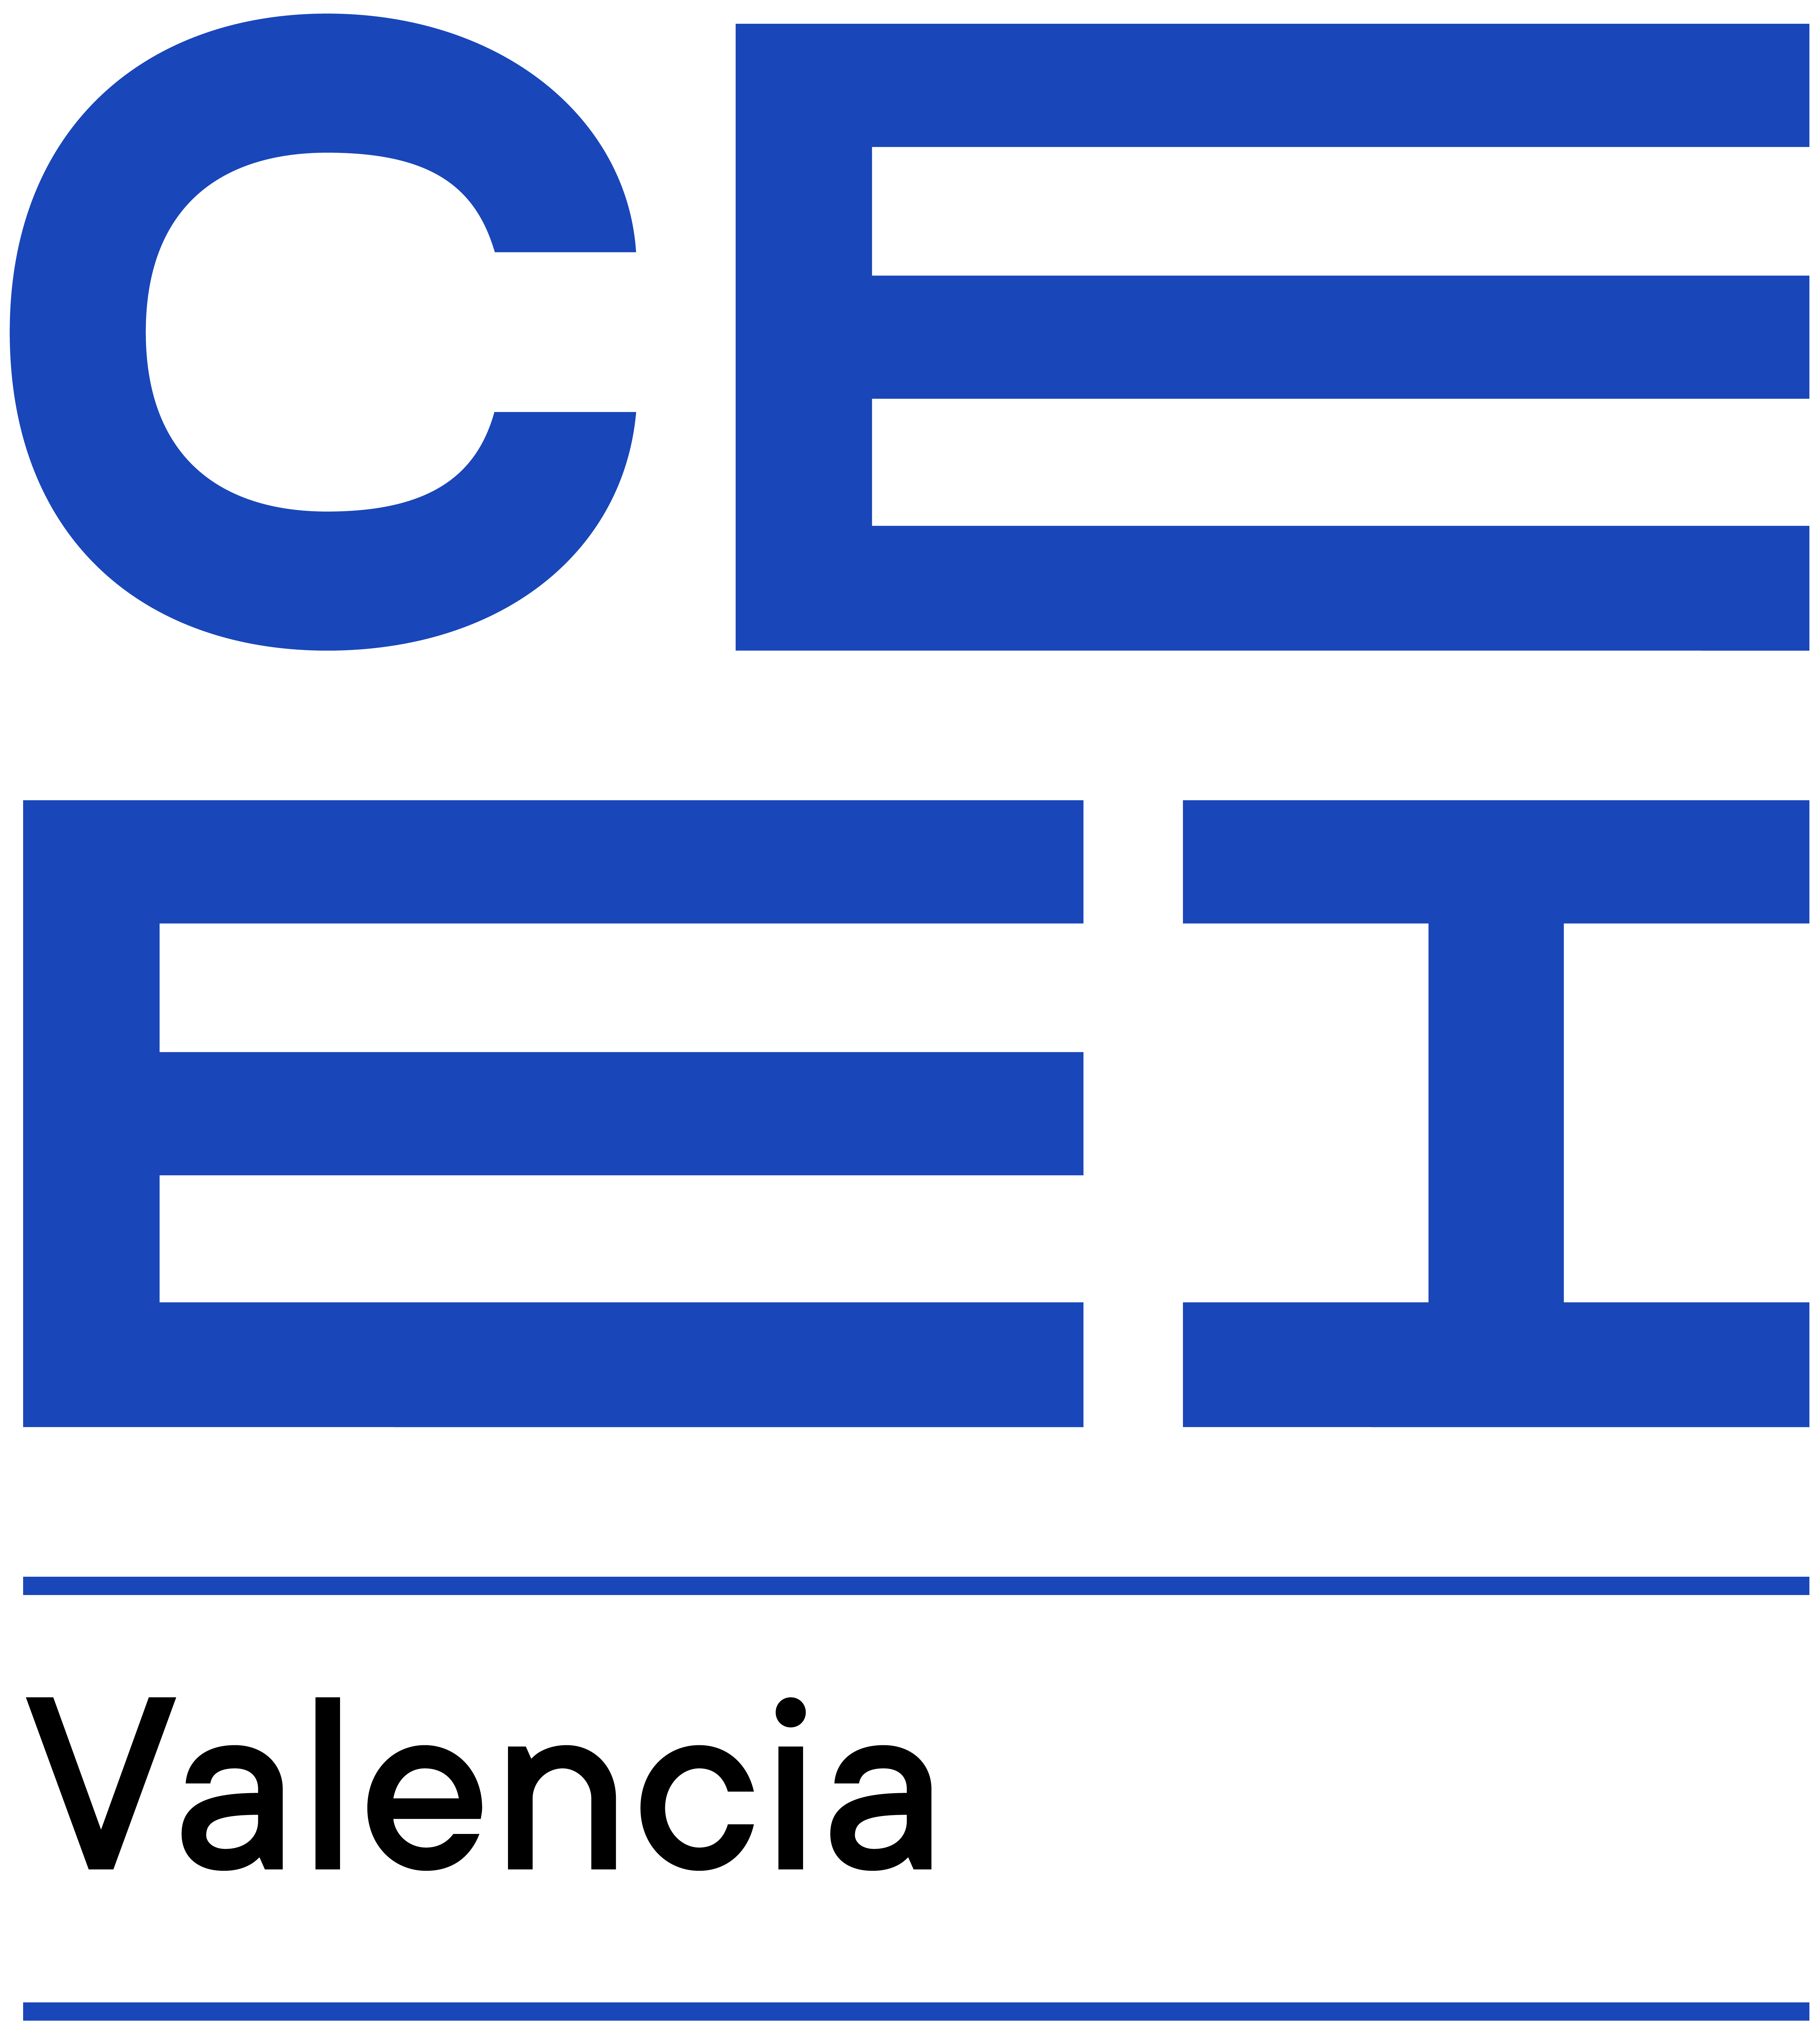 Centro Europeo de Empresas Innovadoras Valencia (CEEI Valencia)